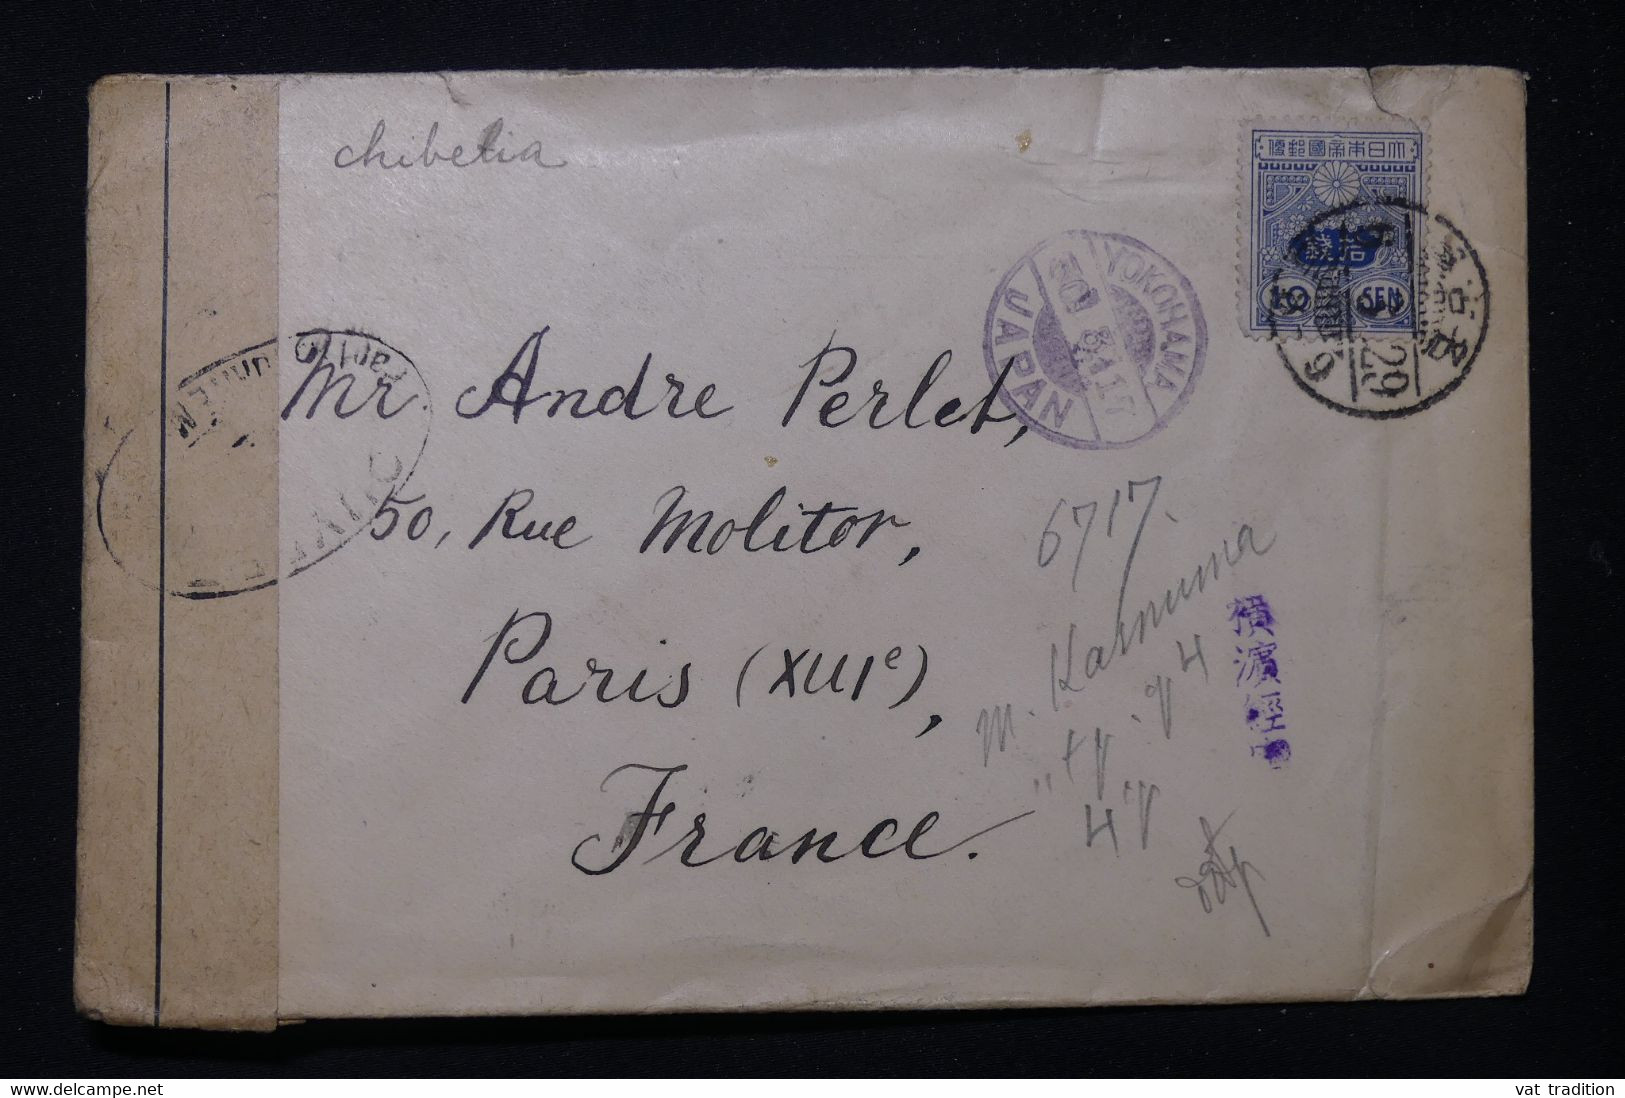 JAPON - Enveloppe De Nagoya Pour La France Via Yokohama En 1917 Avec Contrôle Postal Militaire - L 83455 - Storia Postale